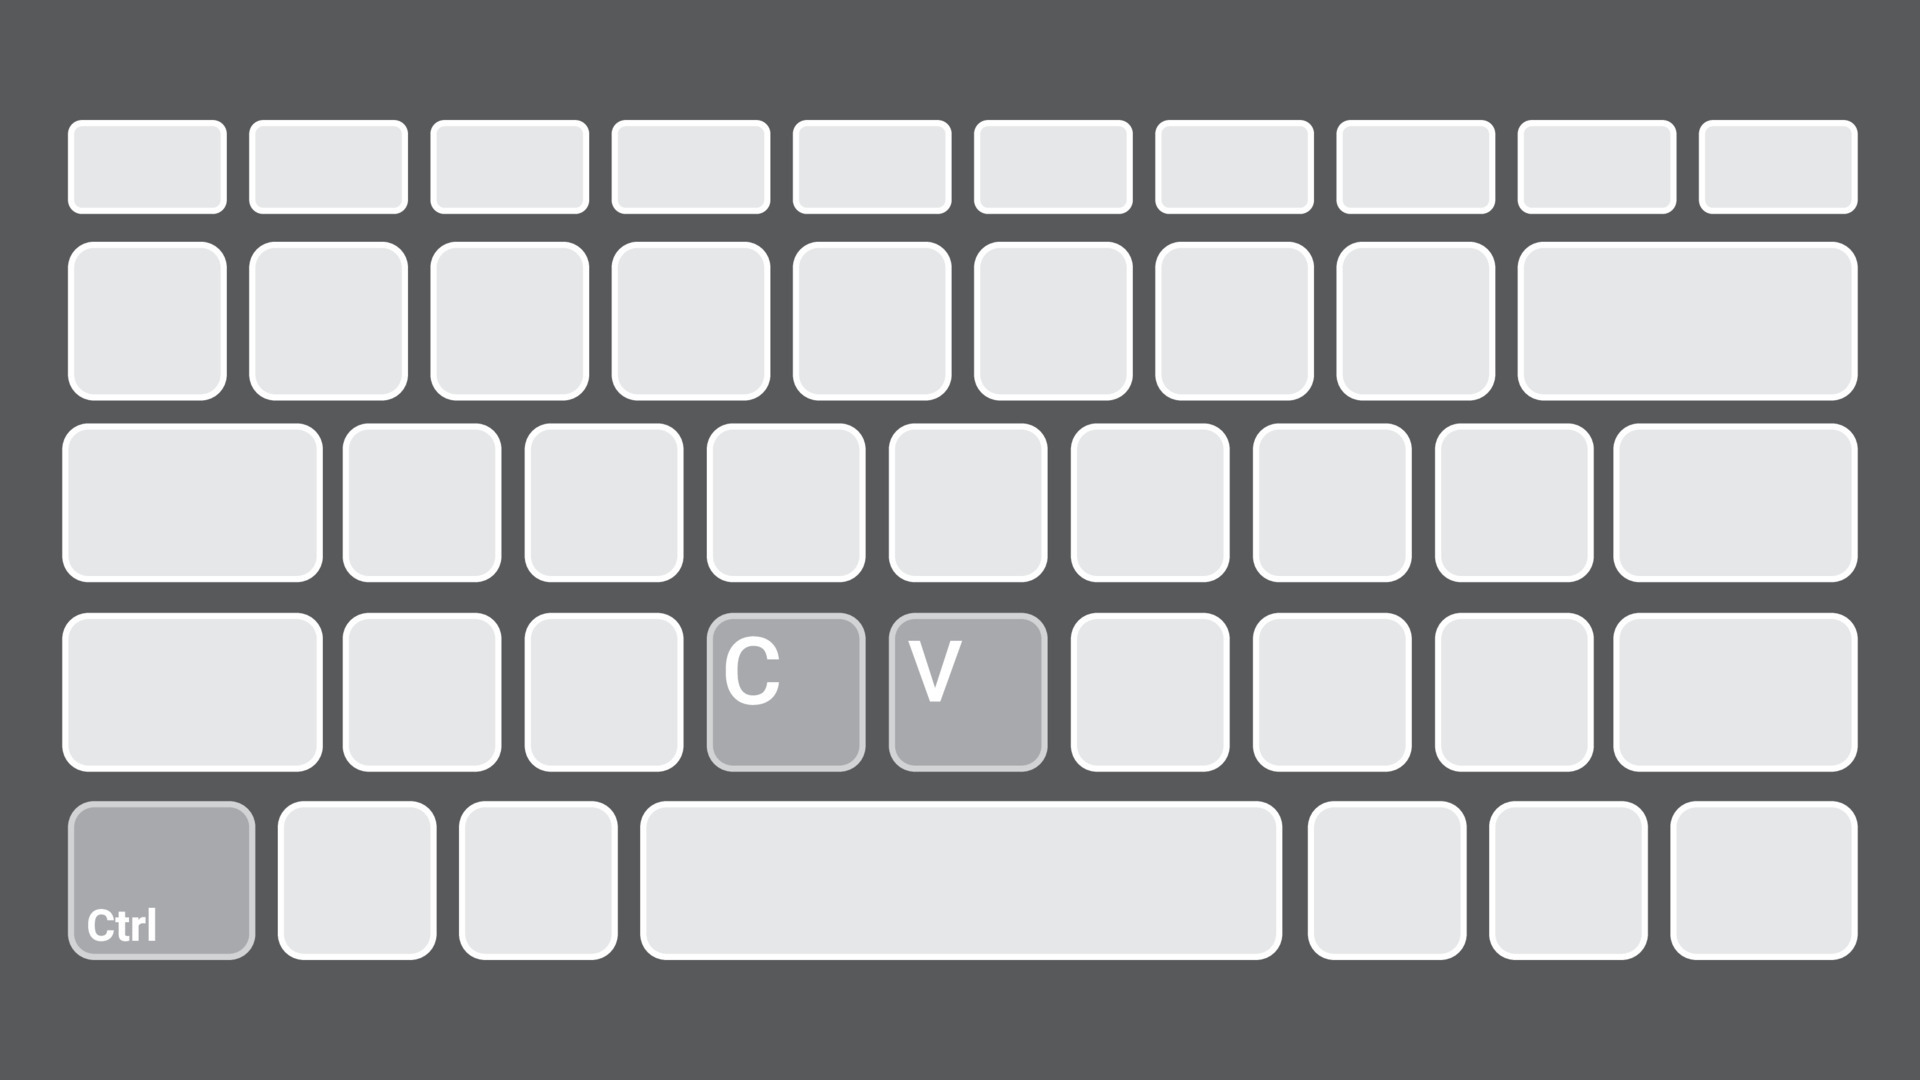 Vector phím tắt là một công cụ hữu ích và tiết kiệm thời gian cho những người làm việc nhiều trên máy tính. Hình ảnh liên quan sẽ giúp bạn nắm bắt và quản lý phím tắt một cách dễ dàng hơn.